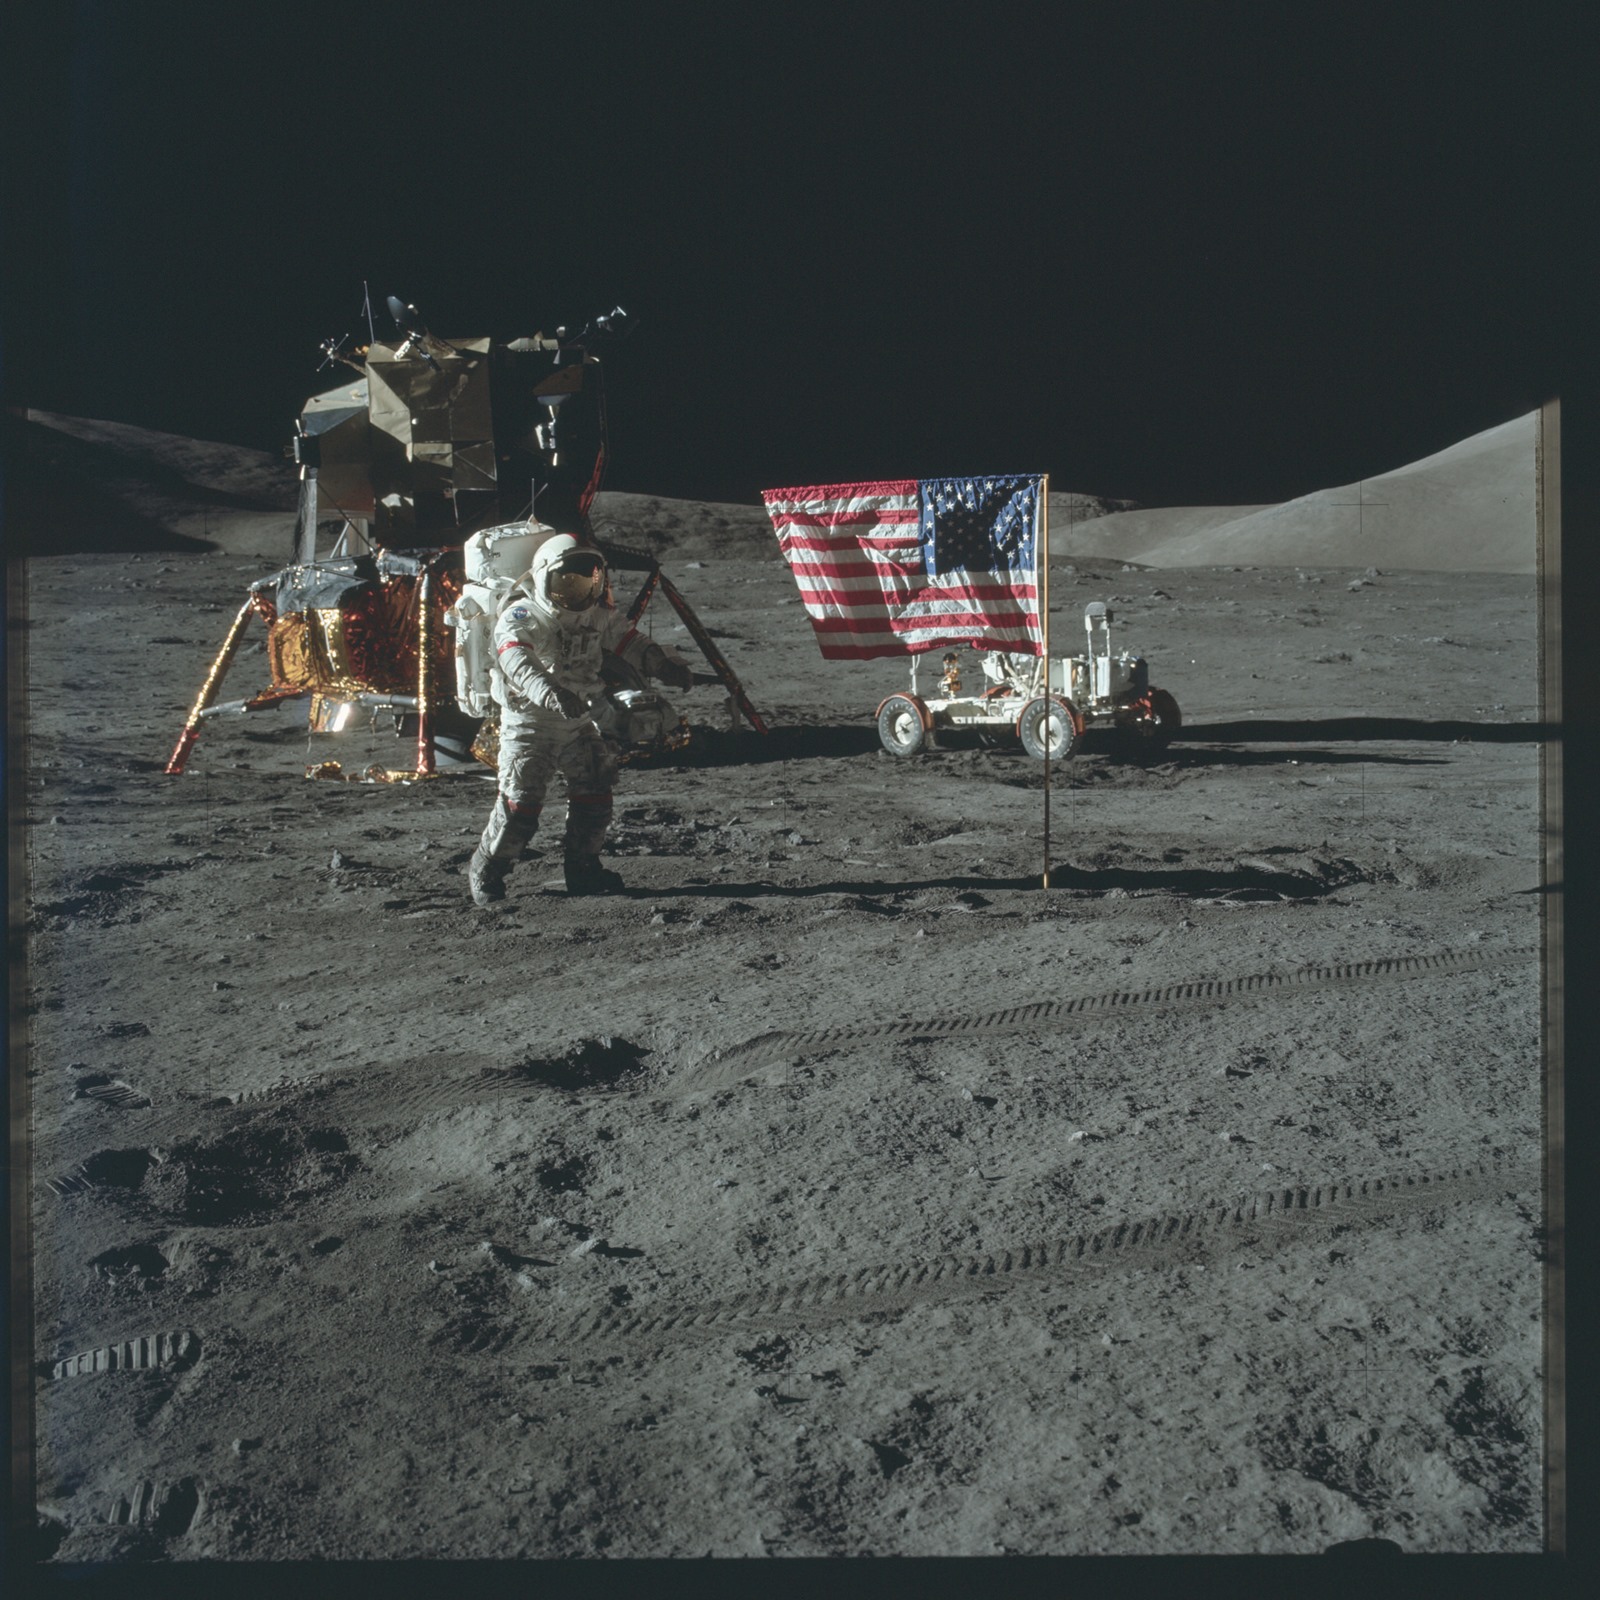 Des milliers de photos des missions lunaires du programme Apollo désormais disponibles sur Flickr